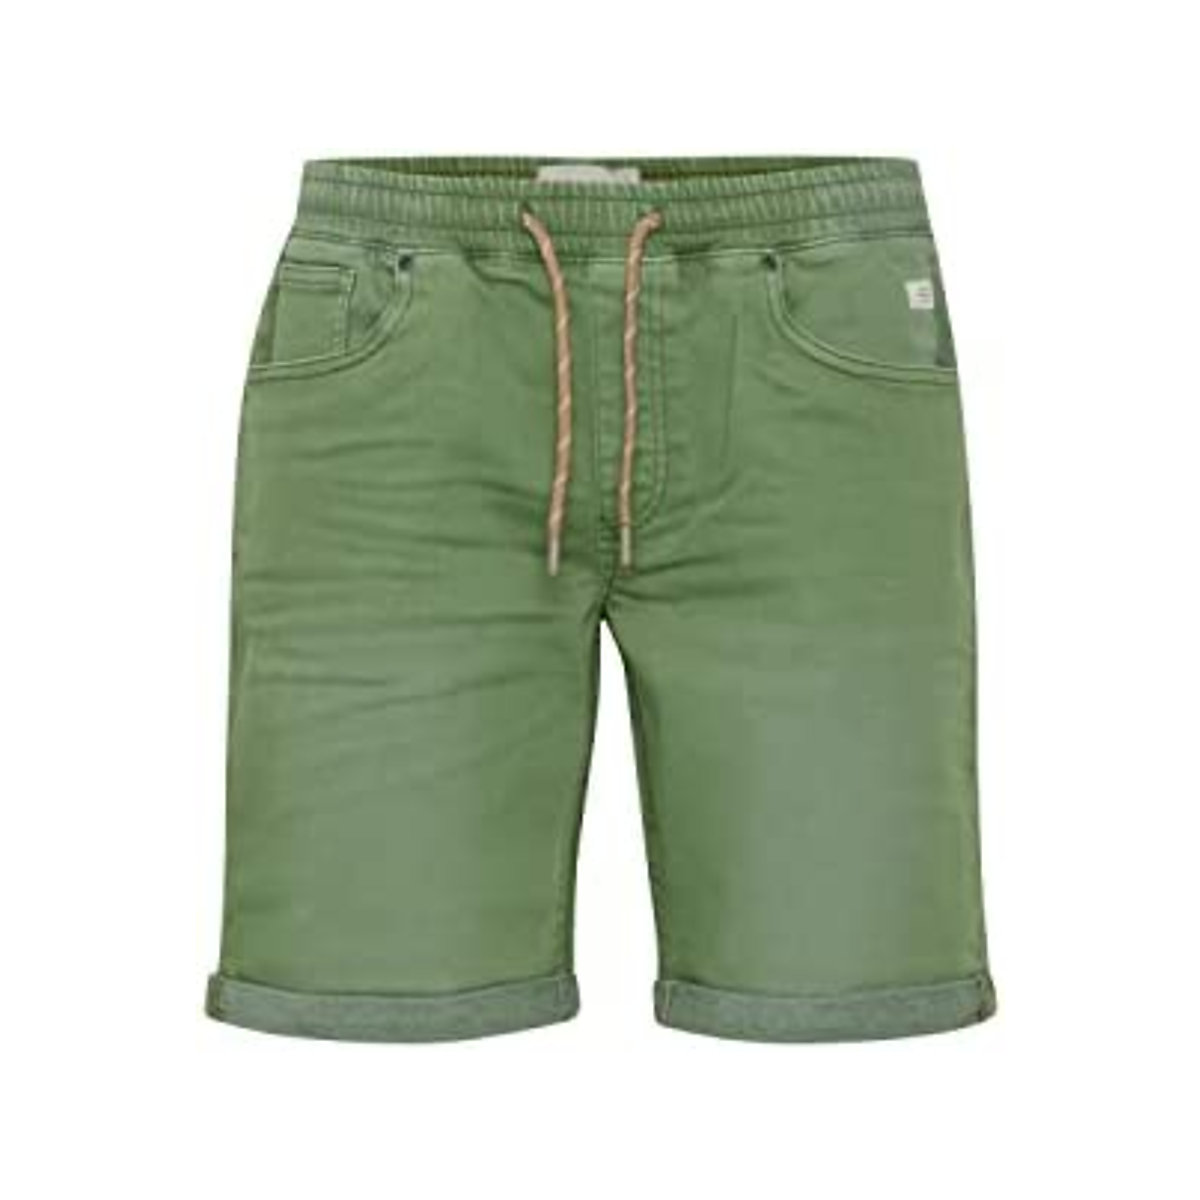 Shorts für Mädchen grün